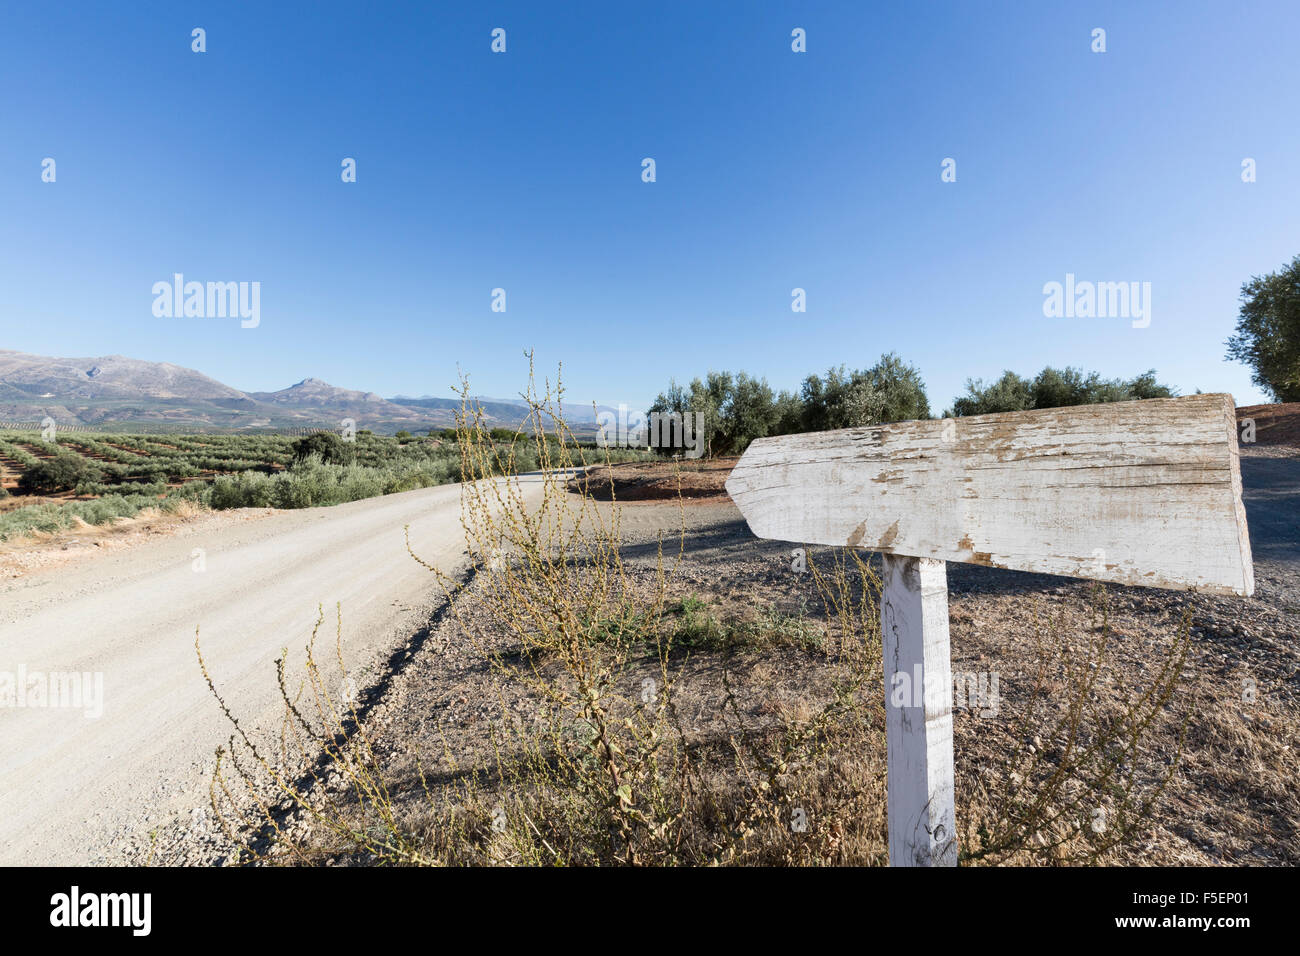 Señal de carretera en blanco al lado de una carretera rural con olivos y montañas en la distancia, Europa Foto de stock